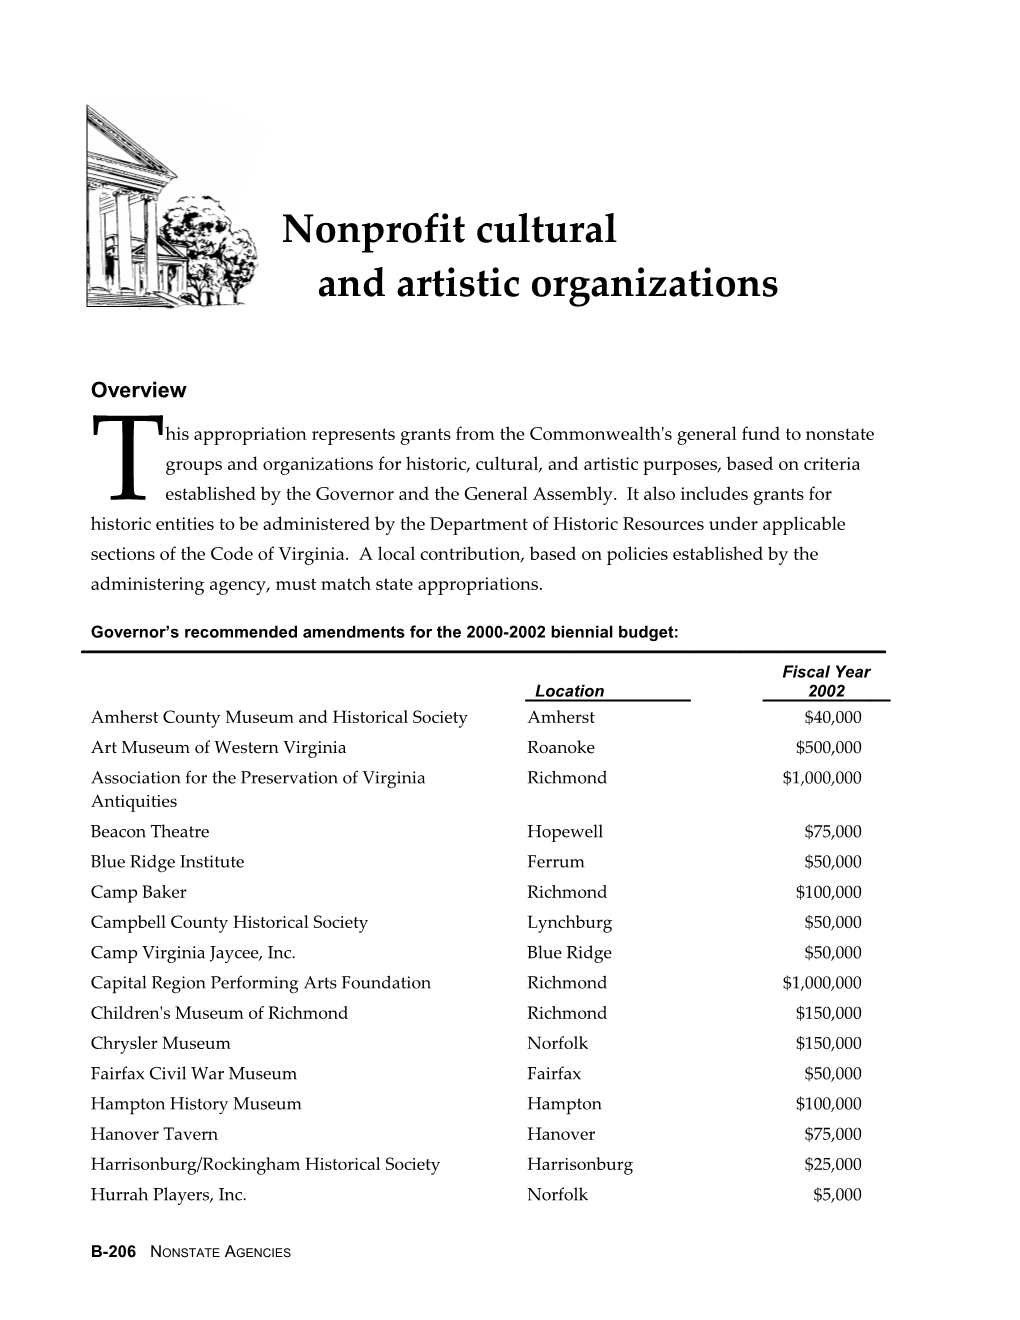 Nonprofit Cultural and Artistic Organizations